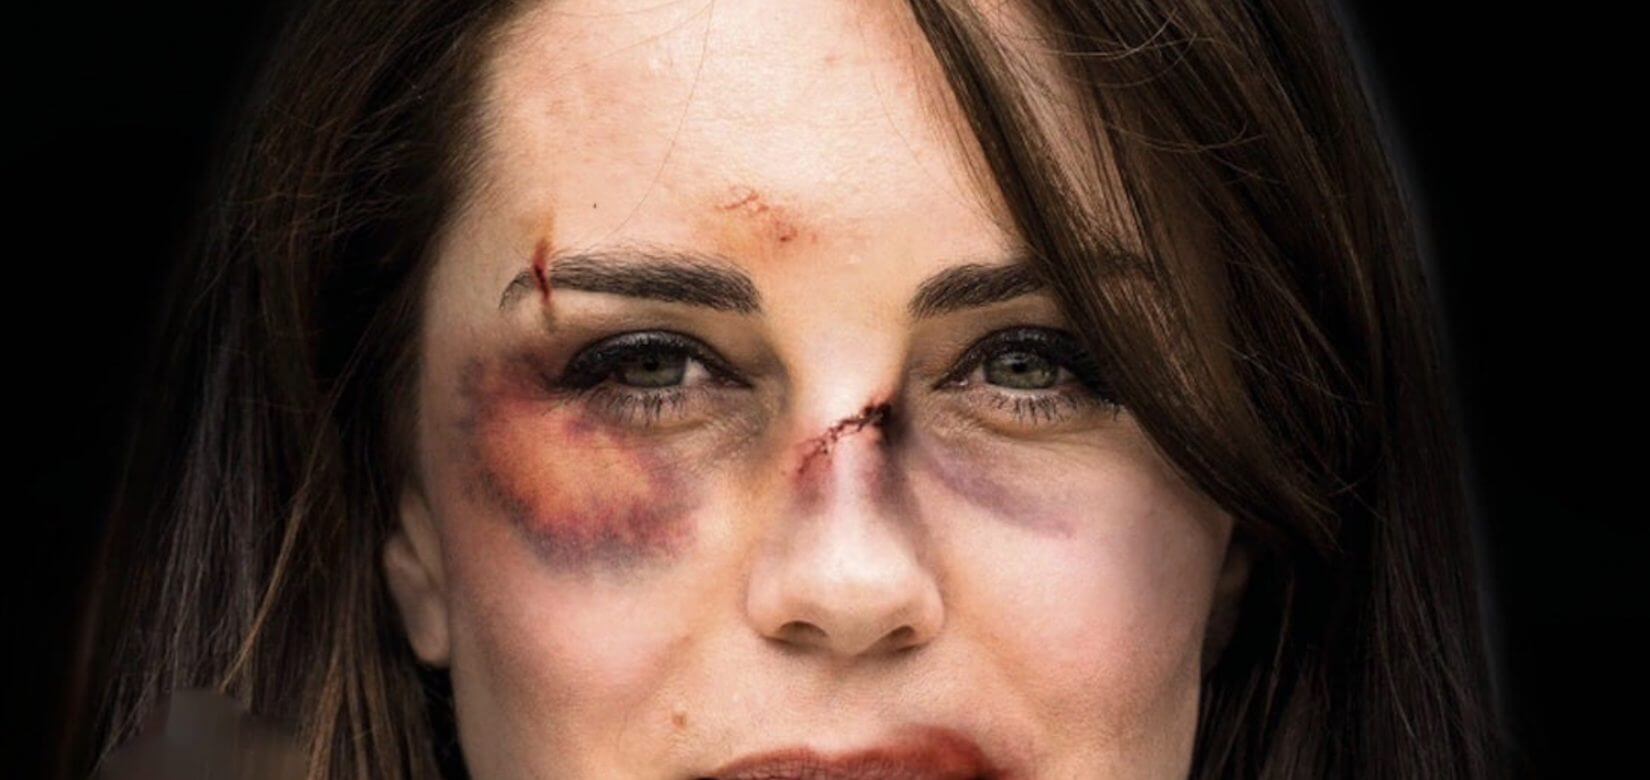 Κινδυνεύει η Κέιτ Μίντλετον να πέσει θύμα ενδοοικογενειακής βίας;